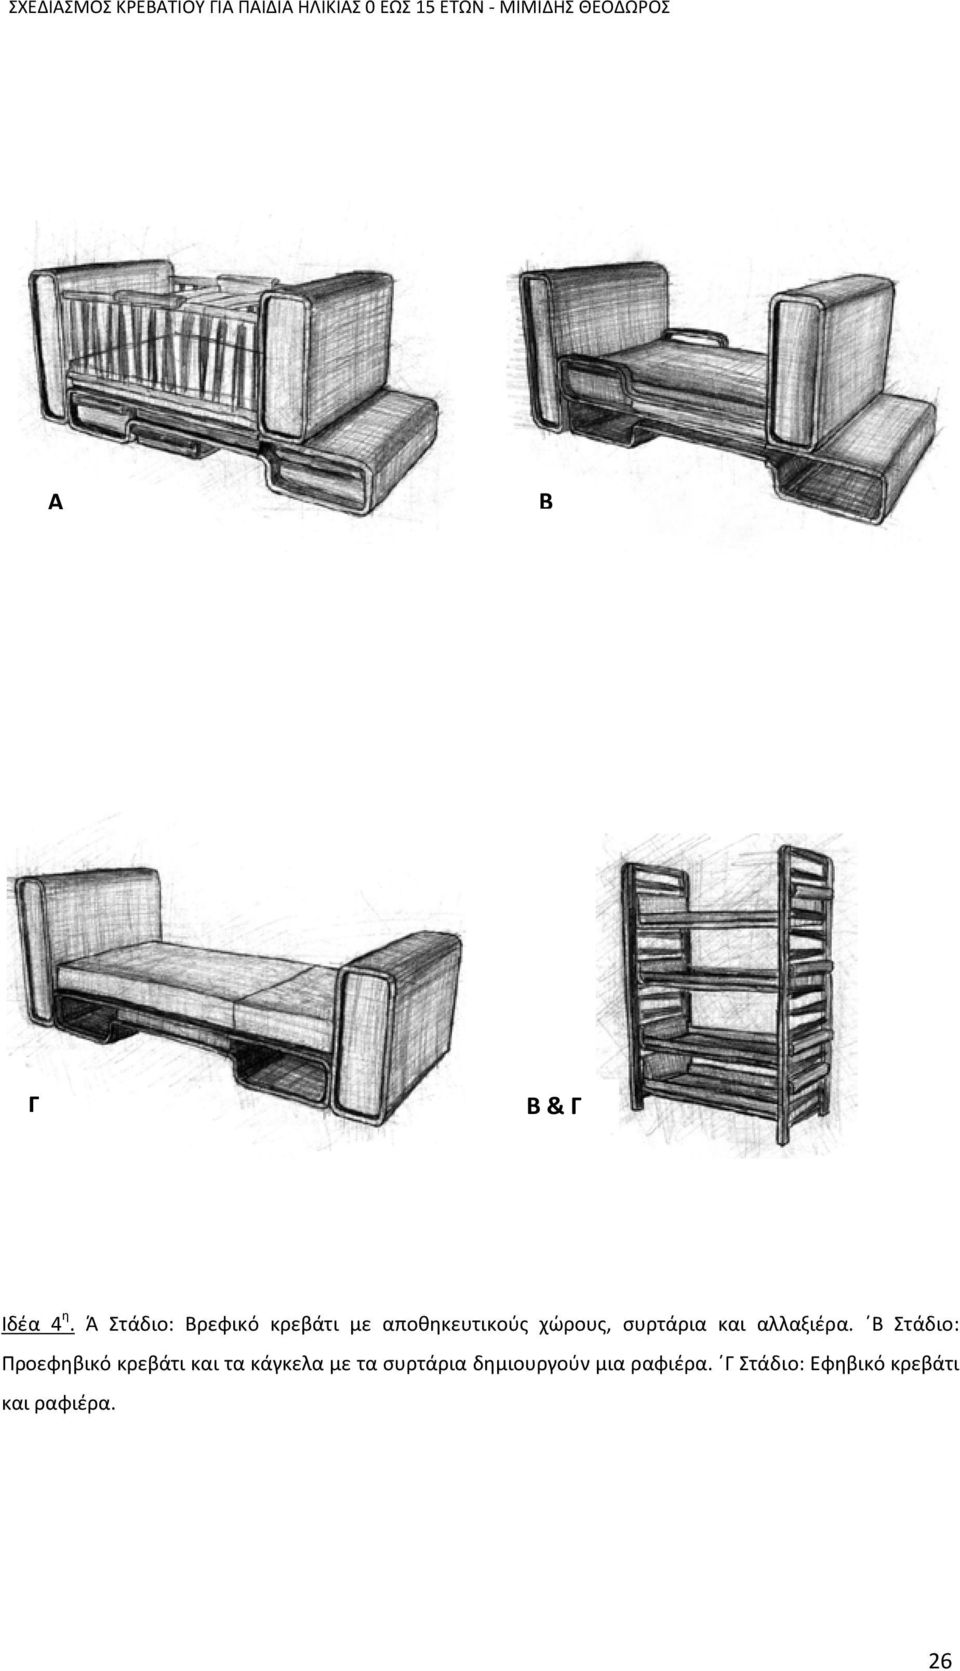 Ά Στάδιο: Βρεφικό κρεβάτι με αποθηκευτικούς χώρους, συρτάρια και